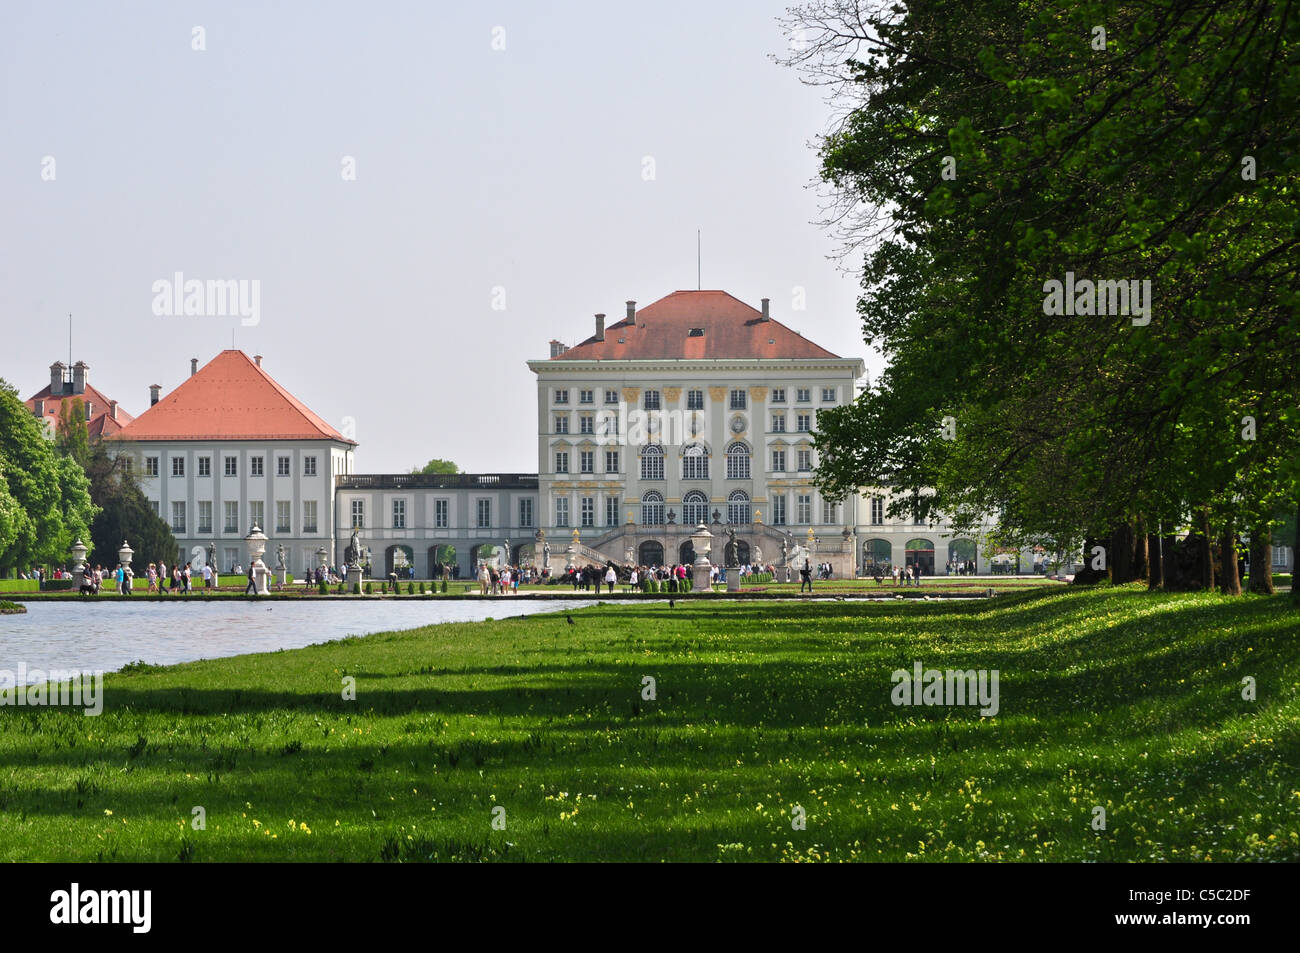 Nymphenburg Palace - Munich, Germany Stock Photo